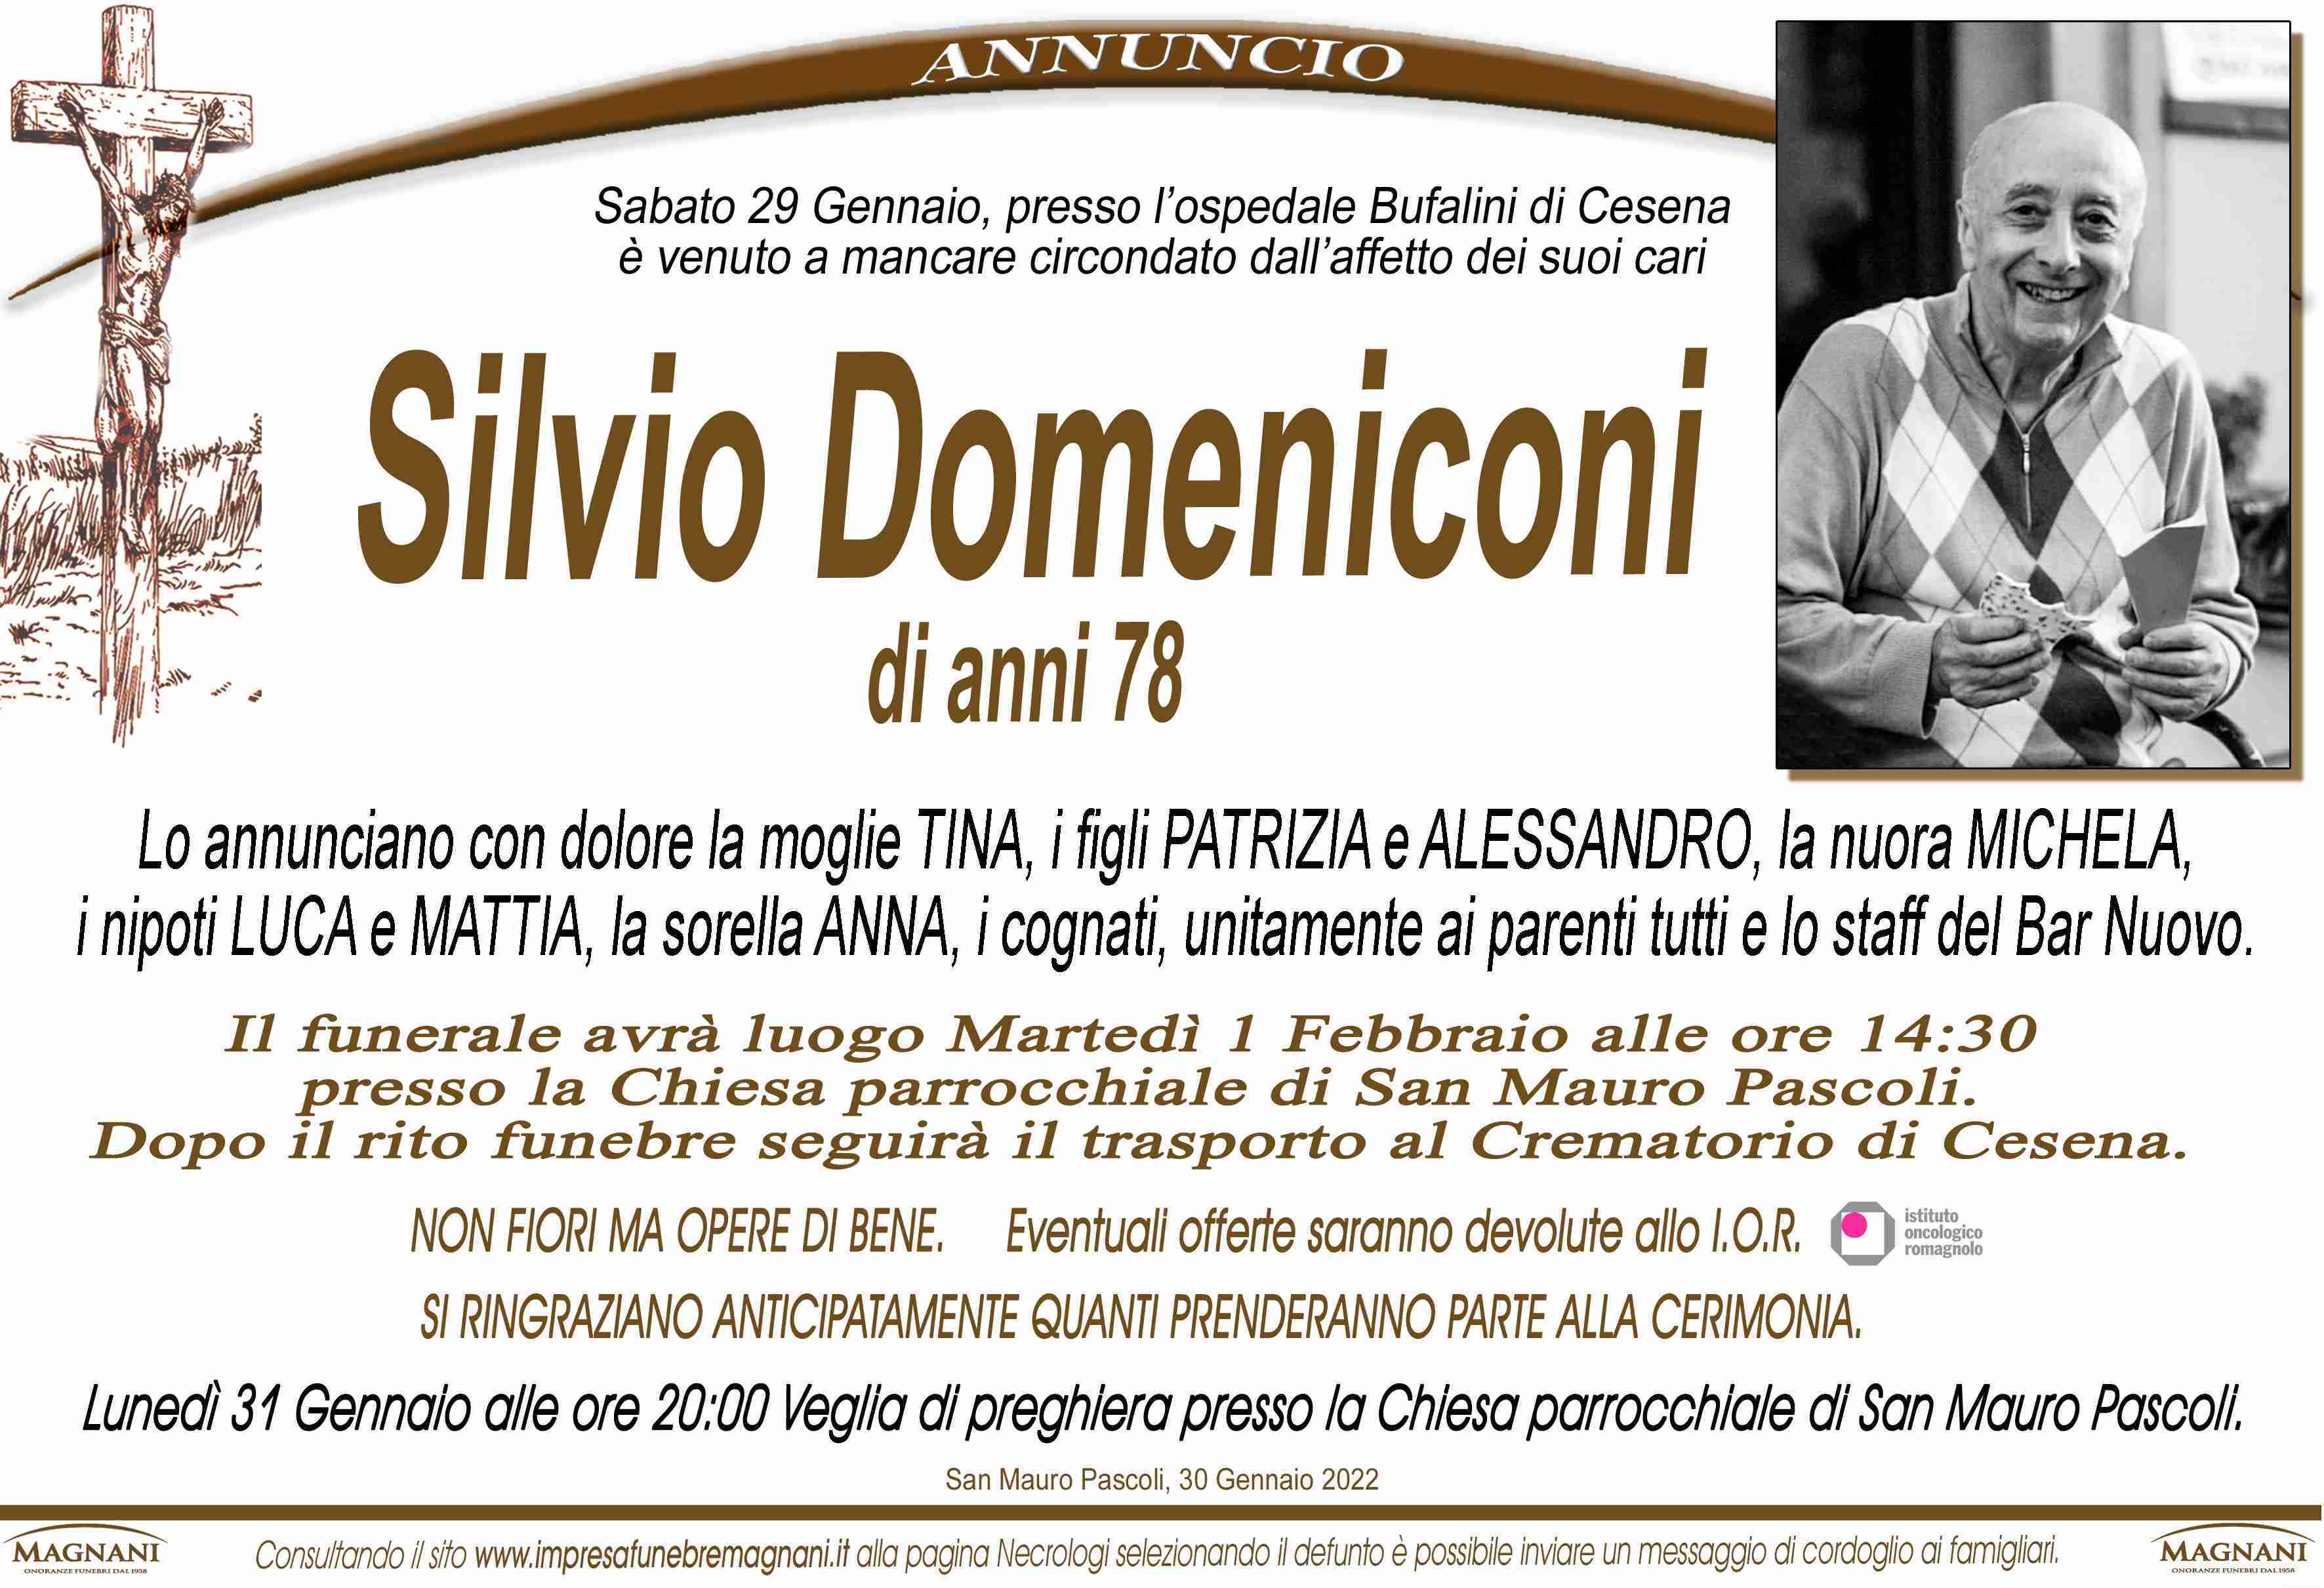 Silvio Domeniconi